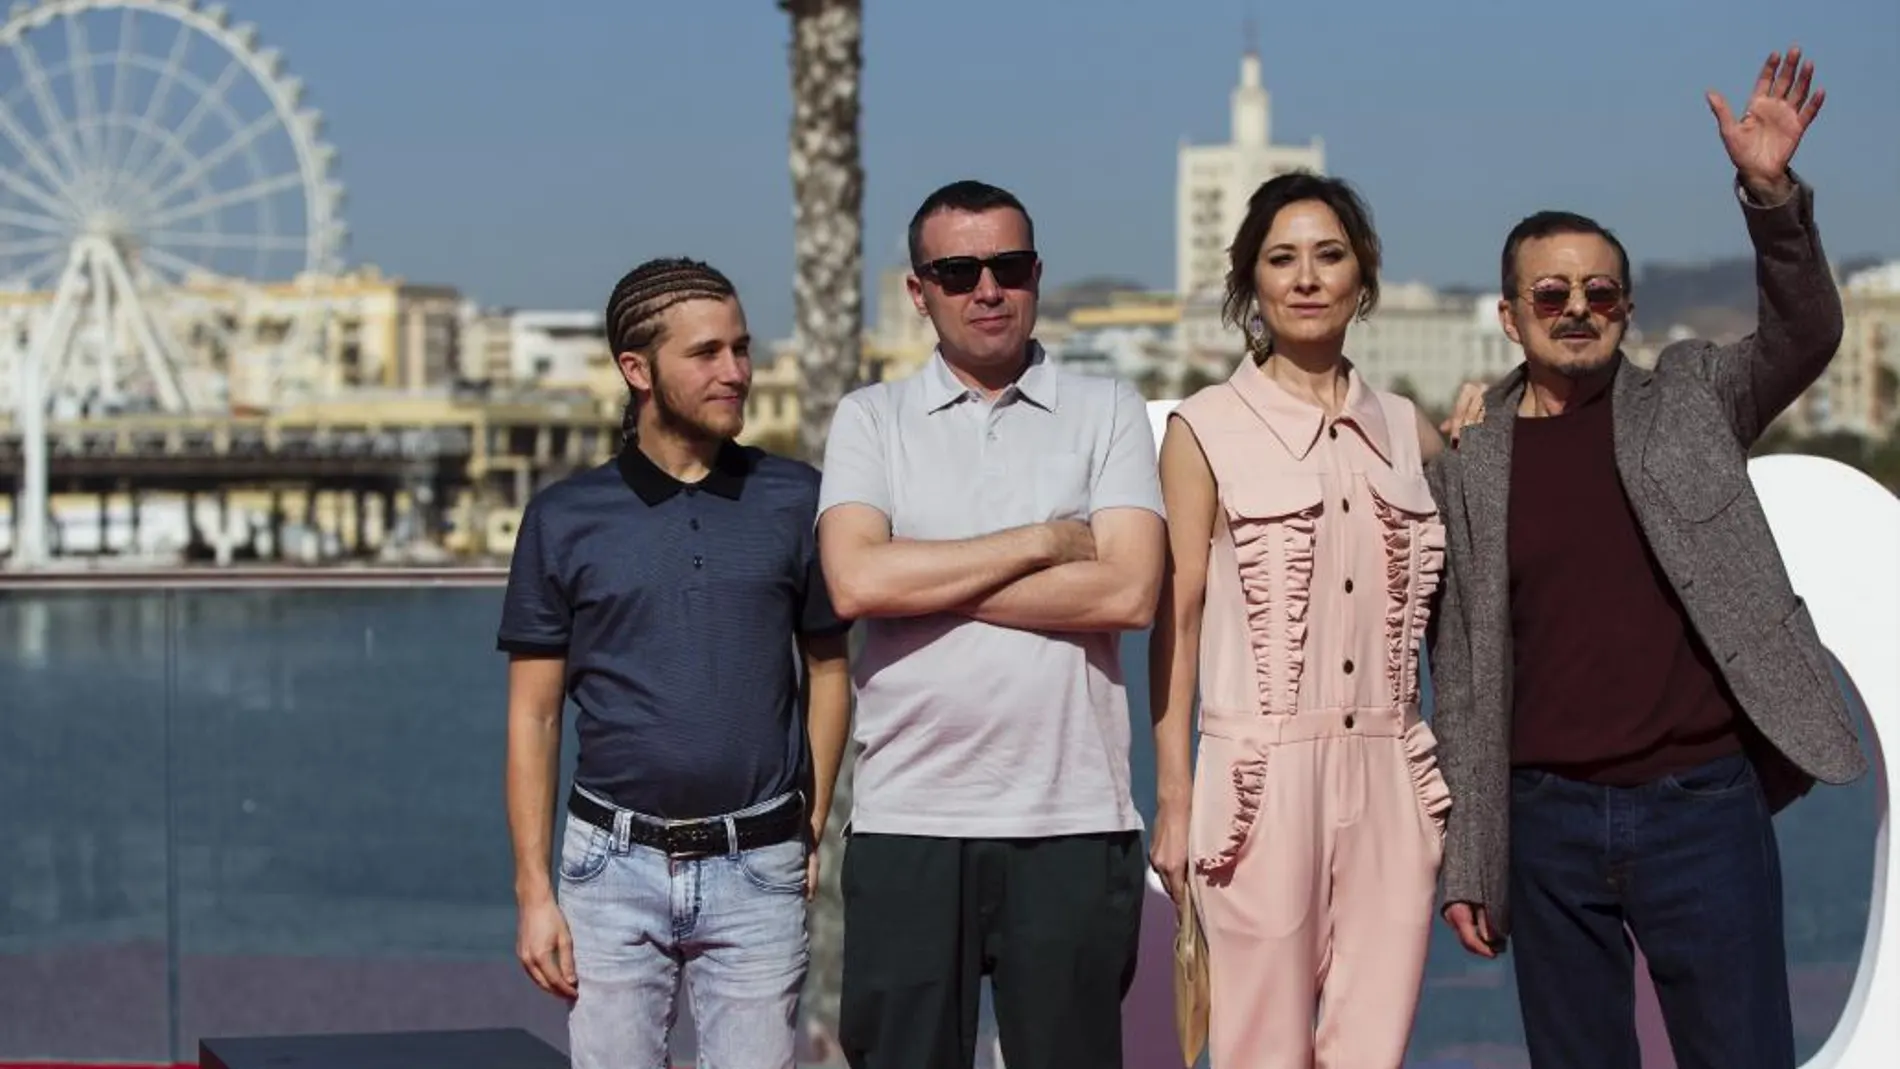 El director Lino Escalera  posa con los actores, Emilio Palacios, Nathalie Poza y Juan Diego, tras presentar su película «No sé decir adiós»